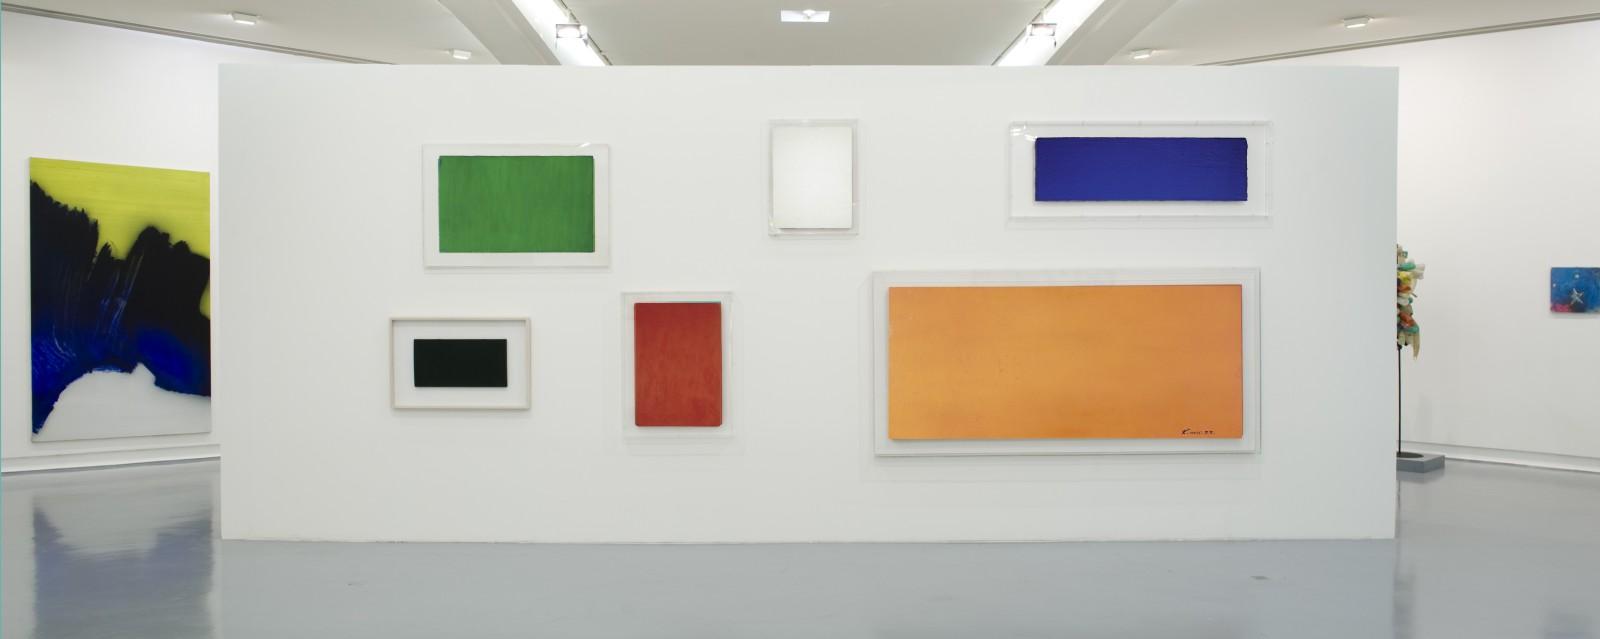 Vue de l'exposition, "La couleur en avant", MAMAC, 2011, (IKB 44, M 33, M 34, M 60, M 75, M 78)